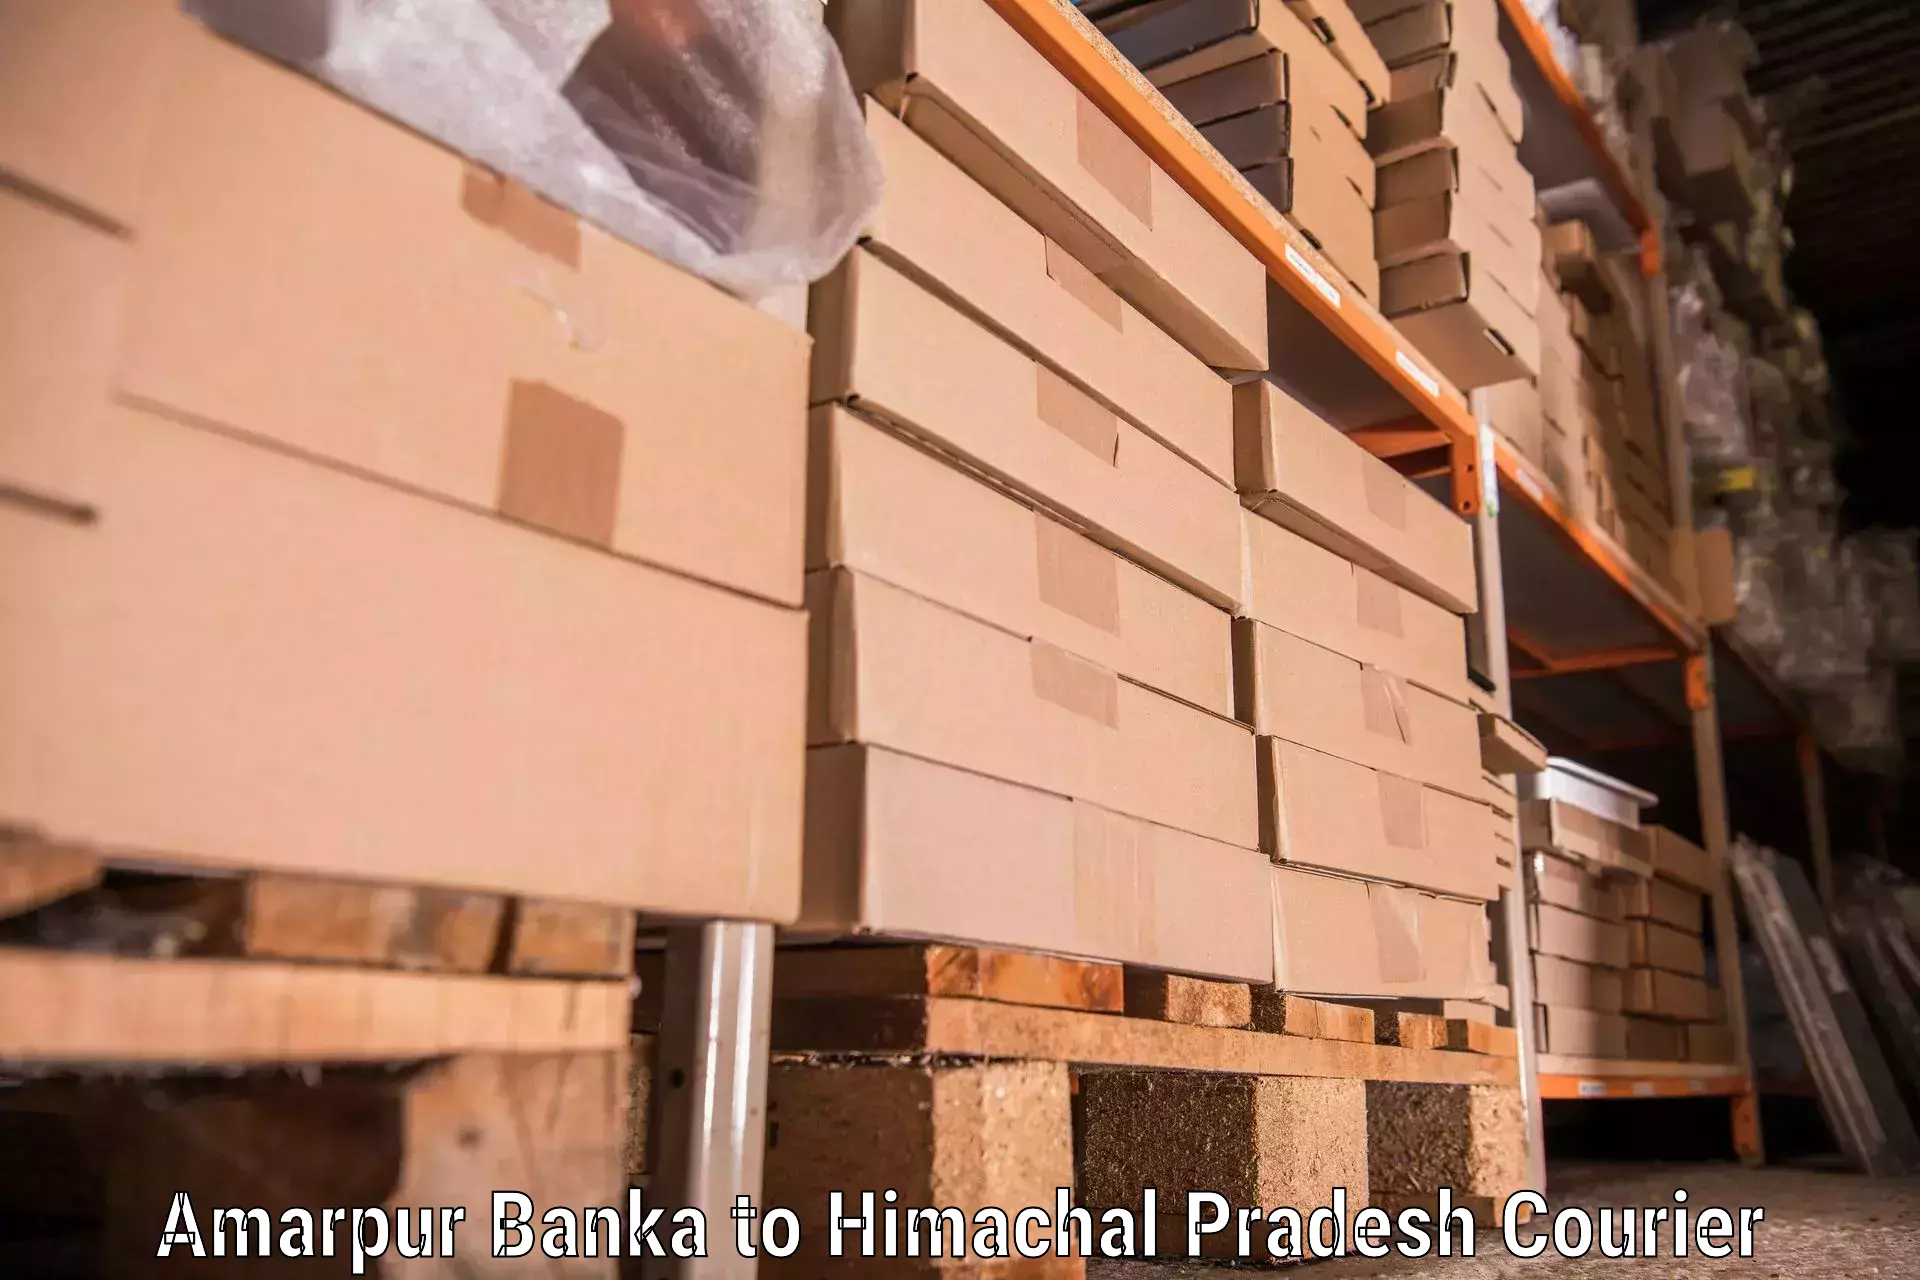 Furniture transport services Amarpur Banka to Patlikuhal